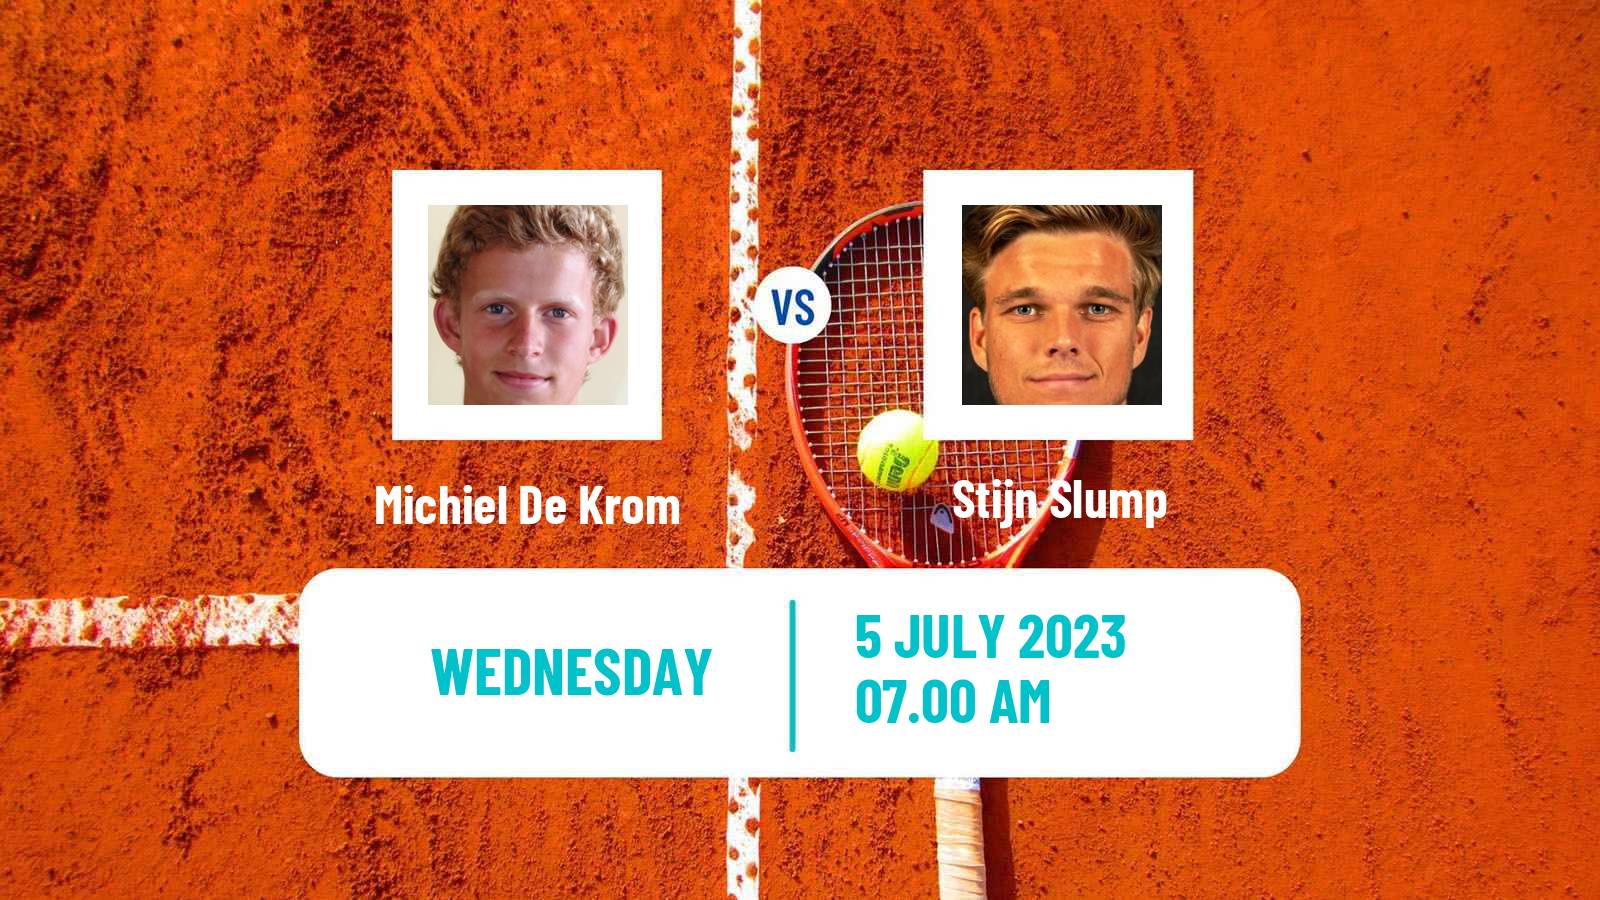 Tennis ITF M25 The Hague Men Michiel De Krom - Stijn Slump